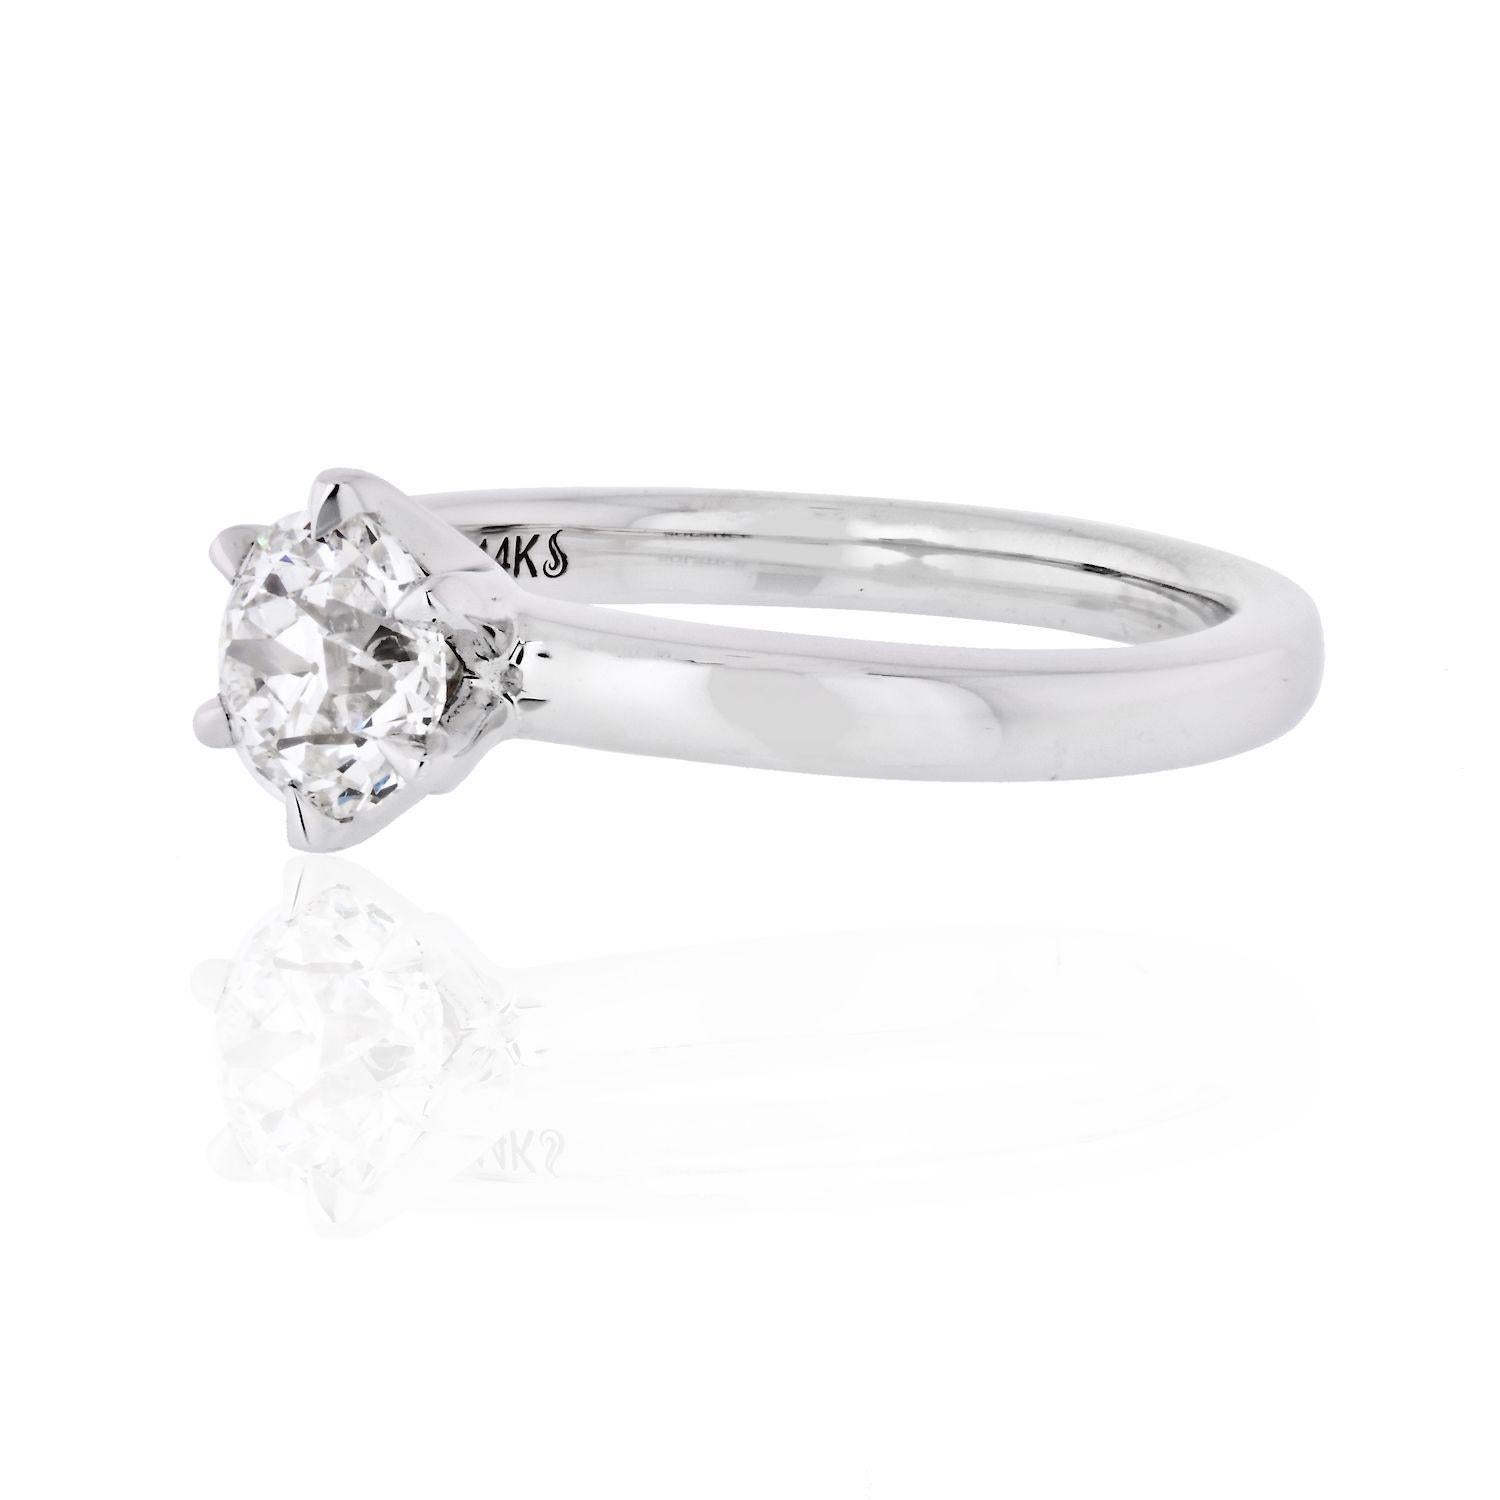 Dieser schlichte und geradlinige Ring ist mit einem 1,02 Karat schweren Diamanten im alteuropäischen Schliff besetzt, der von GIA mit der Farbe G und der Reinheit VS2 zertifiziert wurde. Der mittlere Diamant wird von 6 Zacken gehalten. Der Ring hat